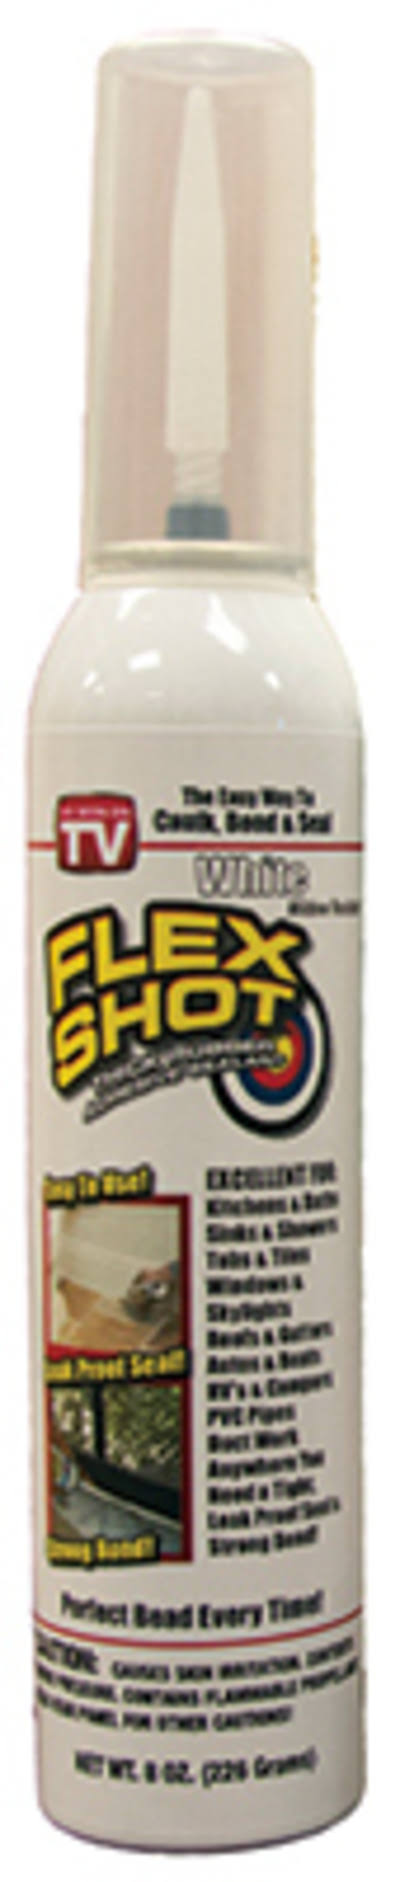 Flex Shot White Thick Rubber Adhesive Sealant - 8oz